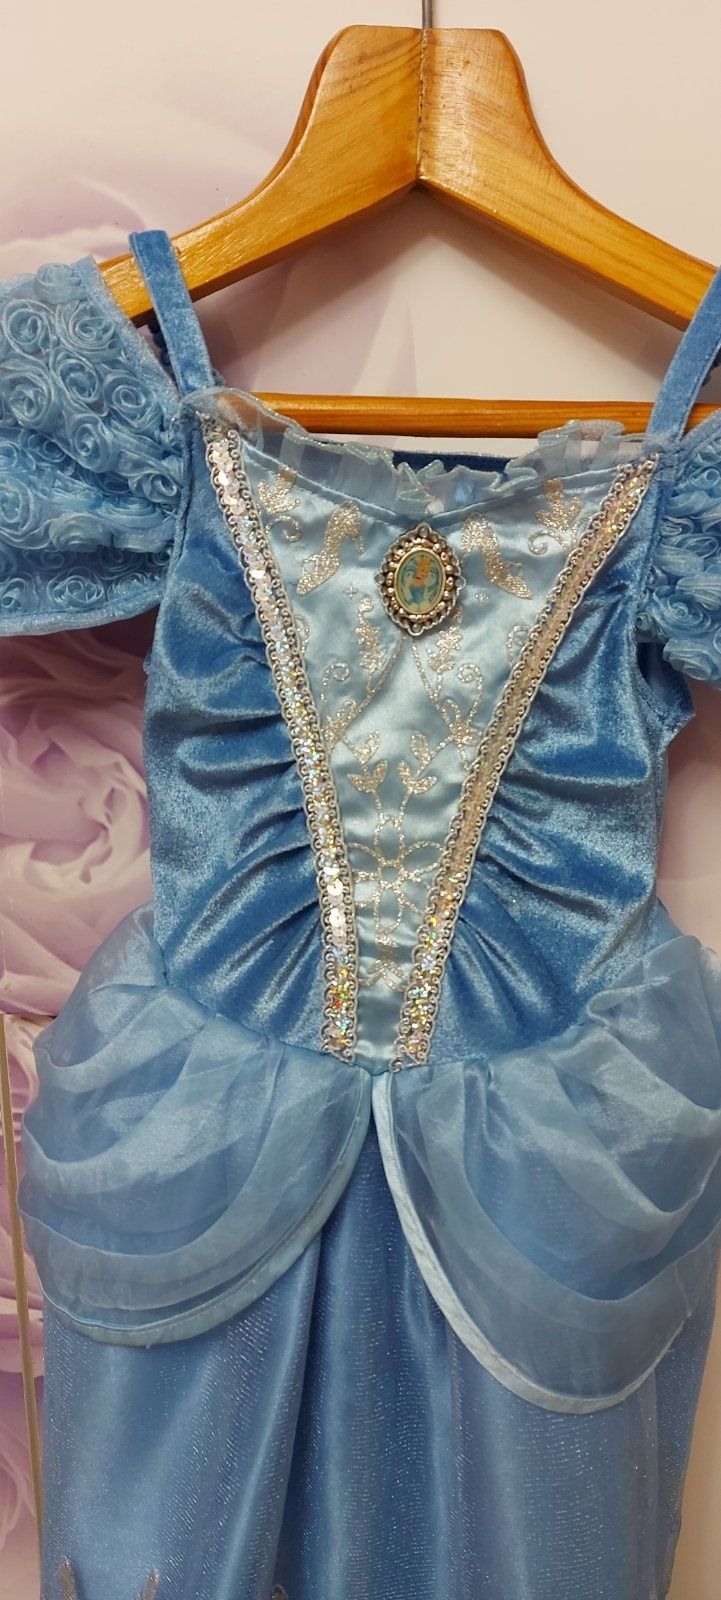 Карнавальный костюм Золушки принцессы Дисней